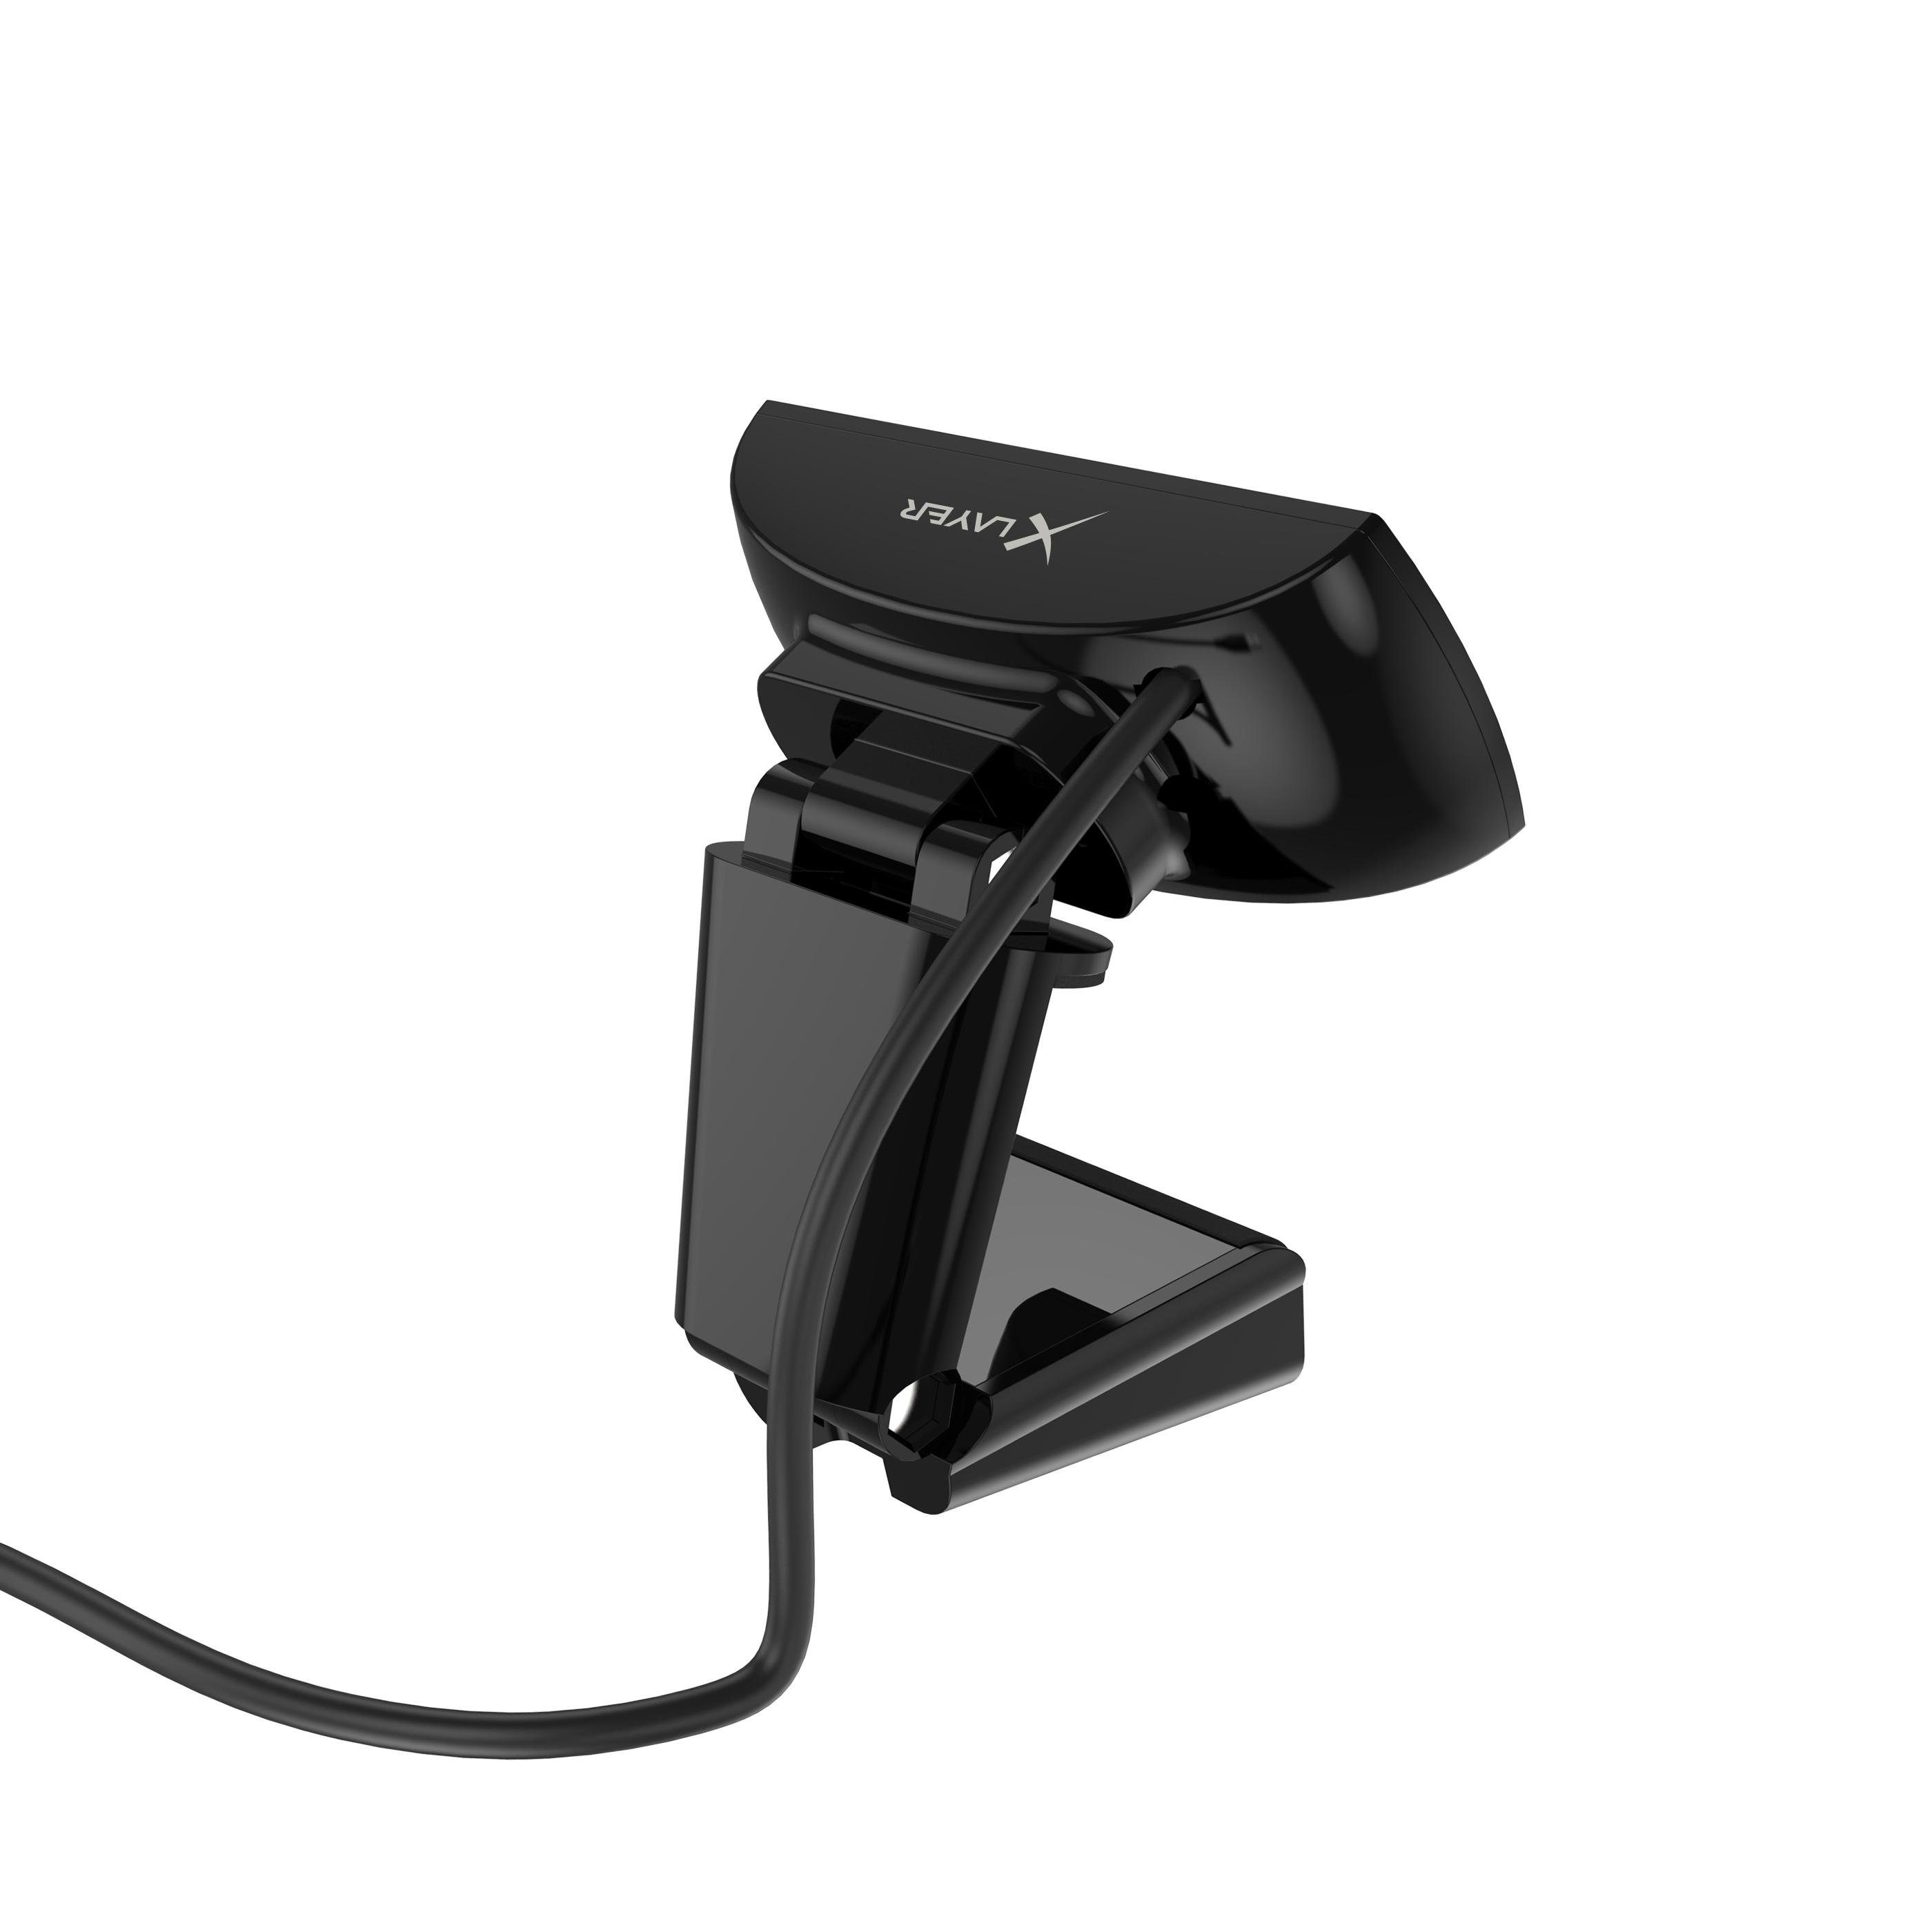 XLAYER 218162 & Full Installation) schwarz USB HD-Webcam (Full Plug Play HD